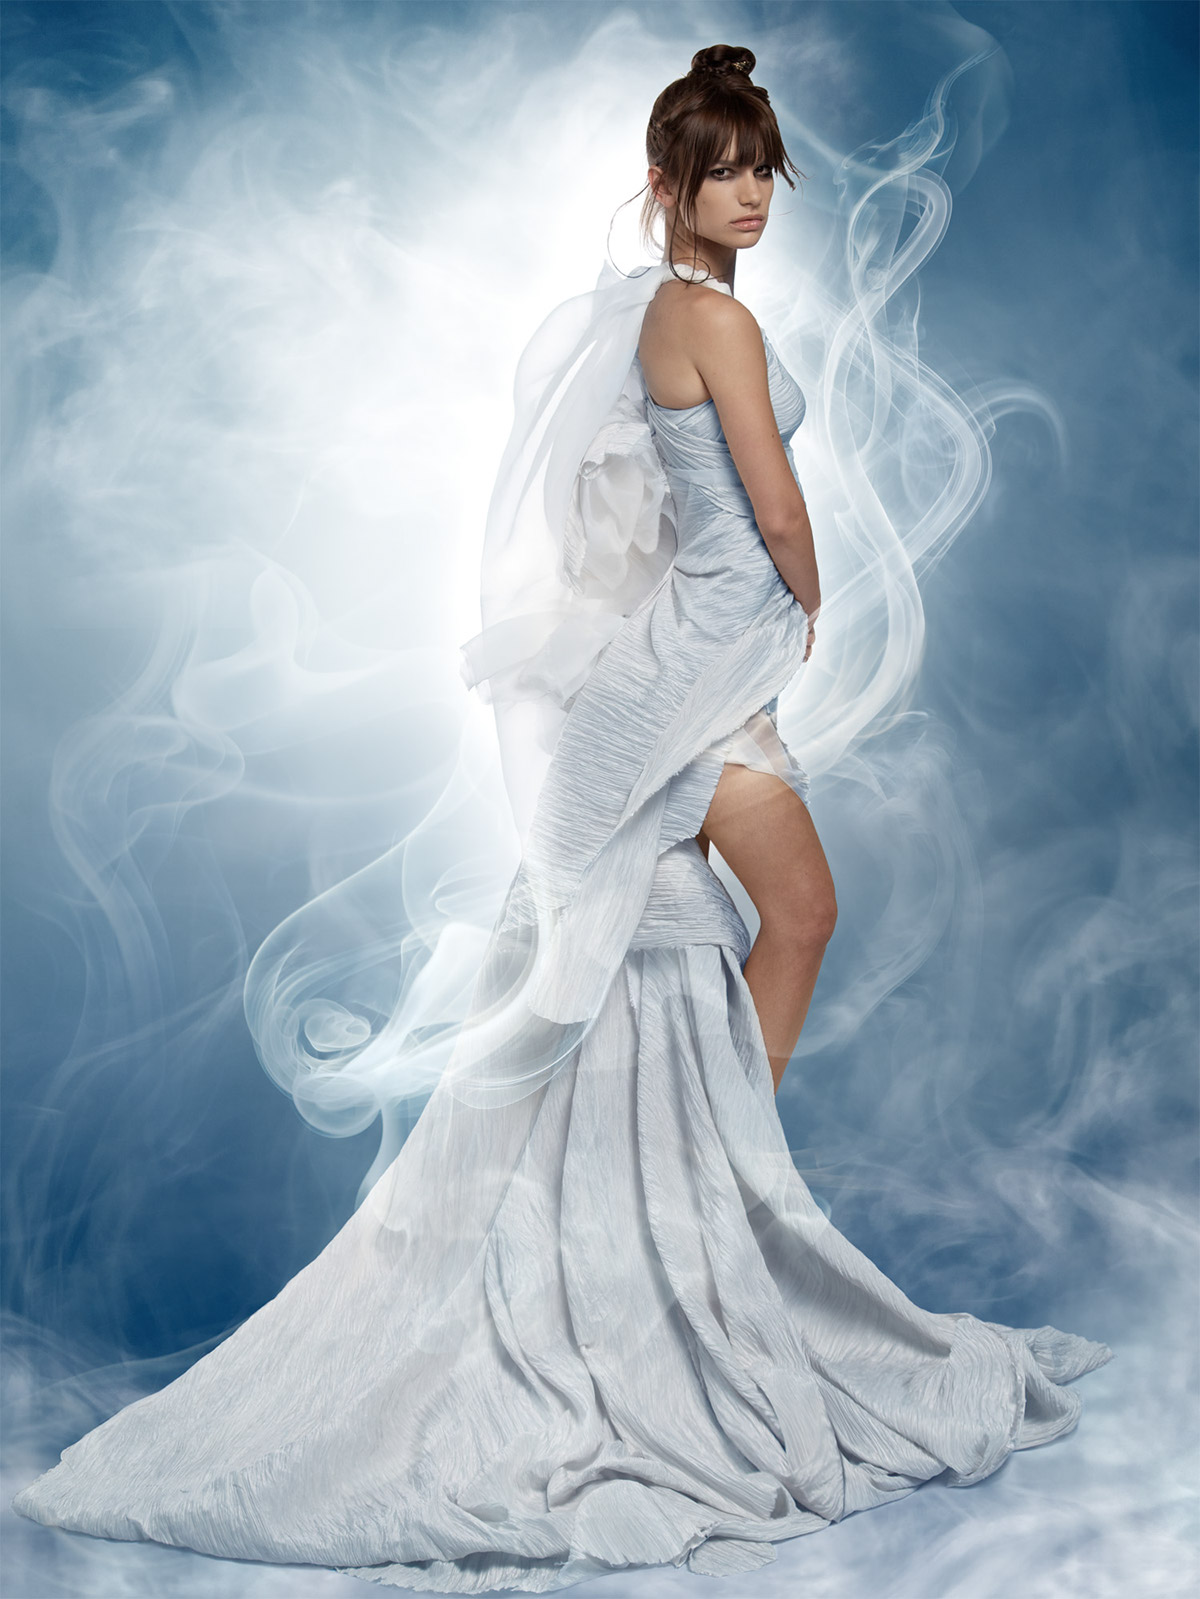 myth mythology oracle delphi oracleofdelphi couture portrait smoke